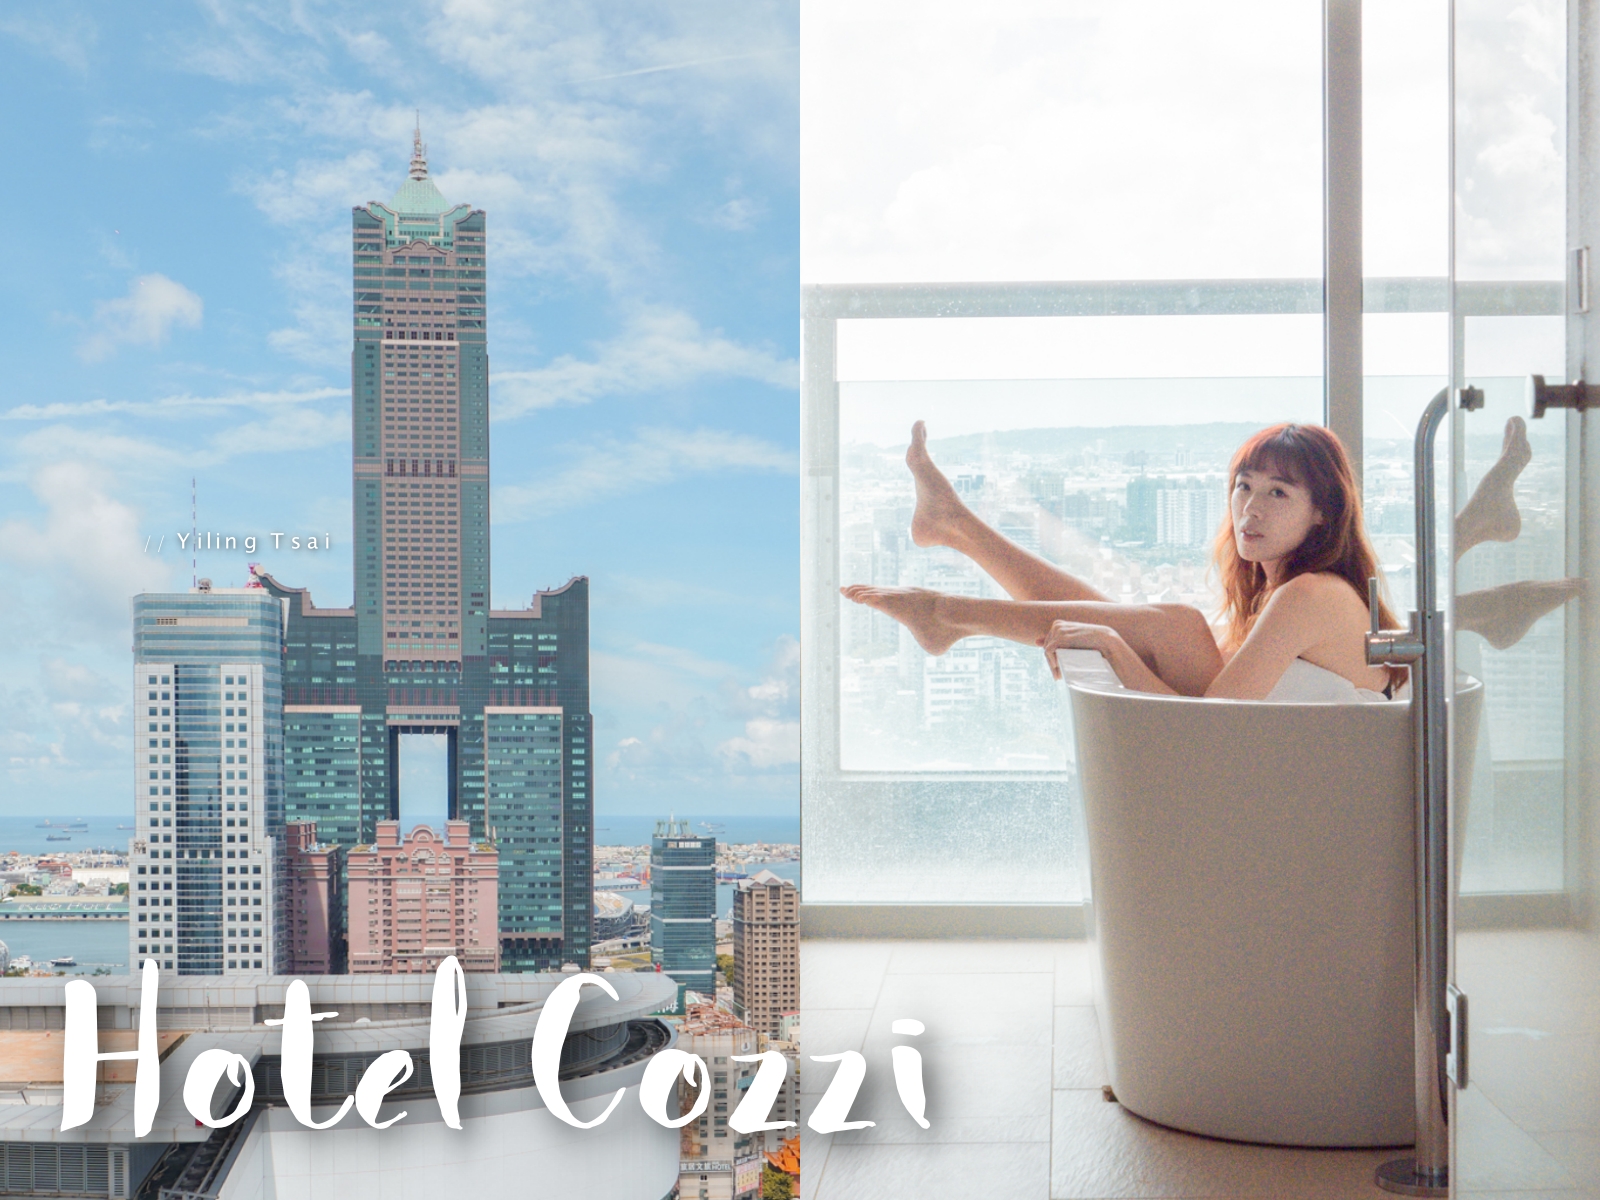 高雄飯店推薦 Hotel Cozzi 和逸飯店高雄中山館 三多商圈舒適景觀住宿